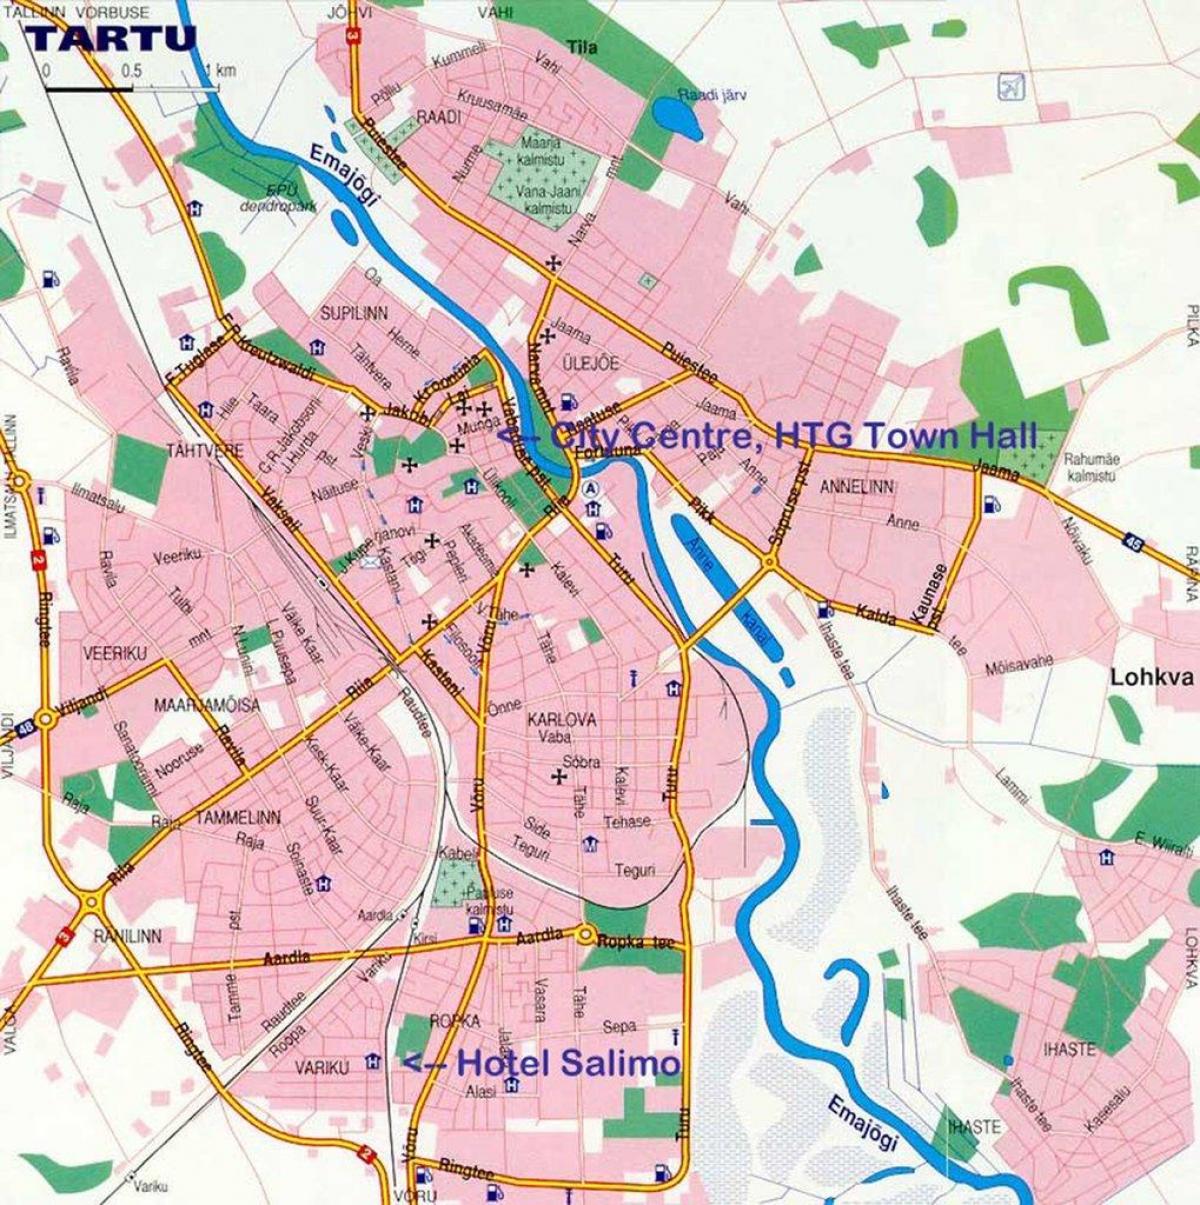 χάρτης του tartu της Εσθονίας